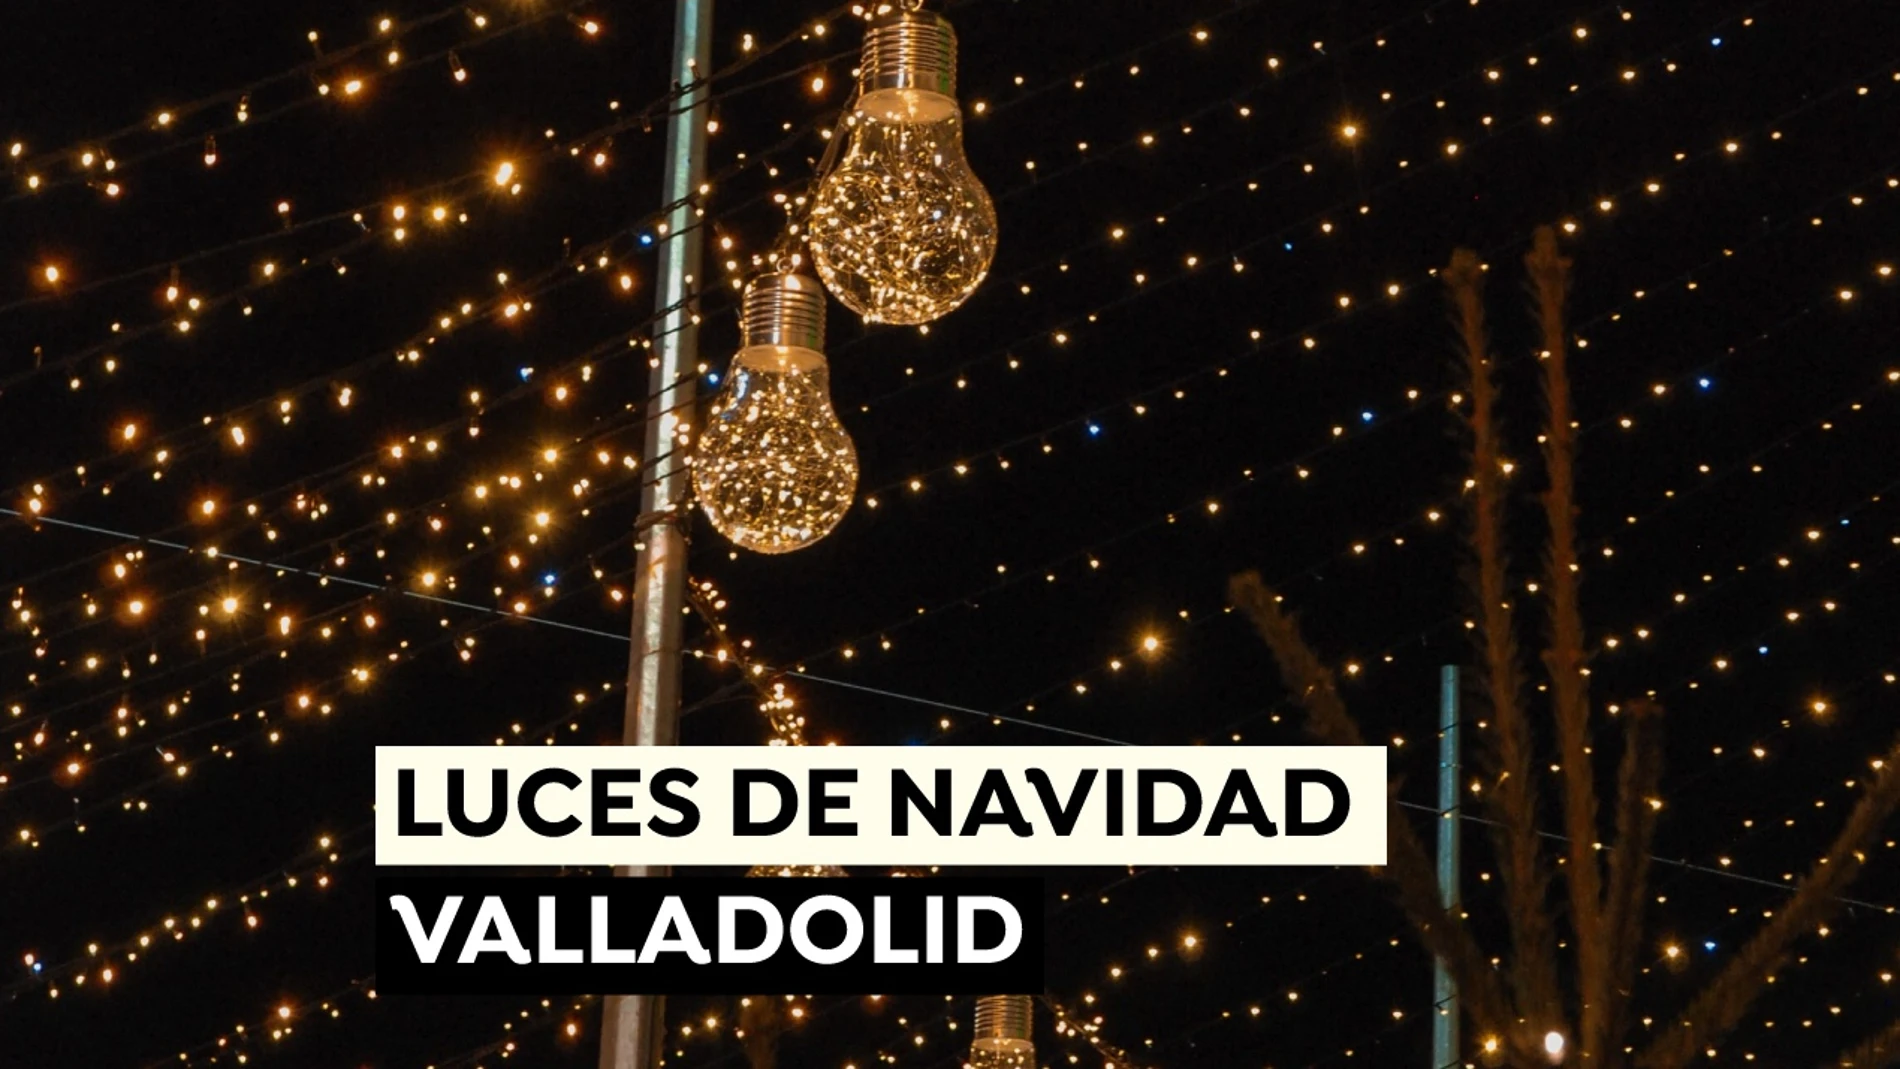 Encendido de las luces de Navidad Valladolid en 2021